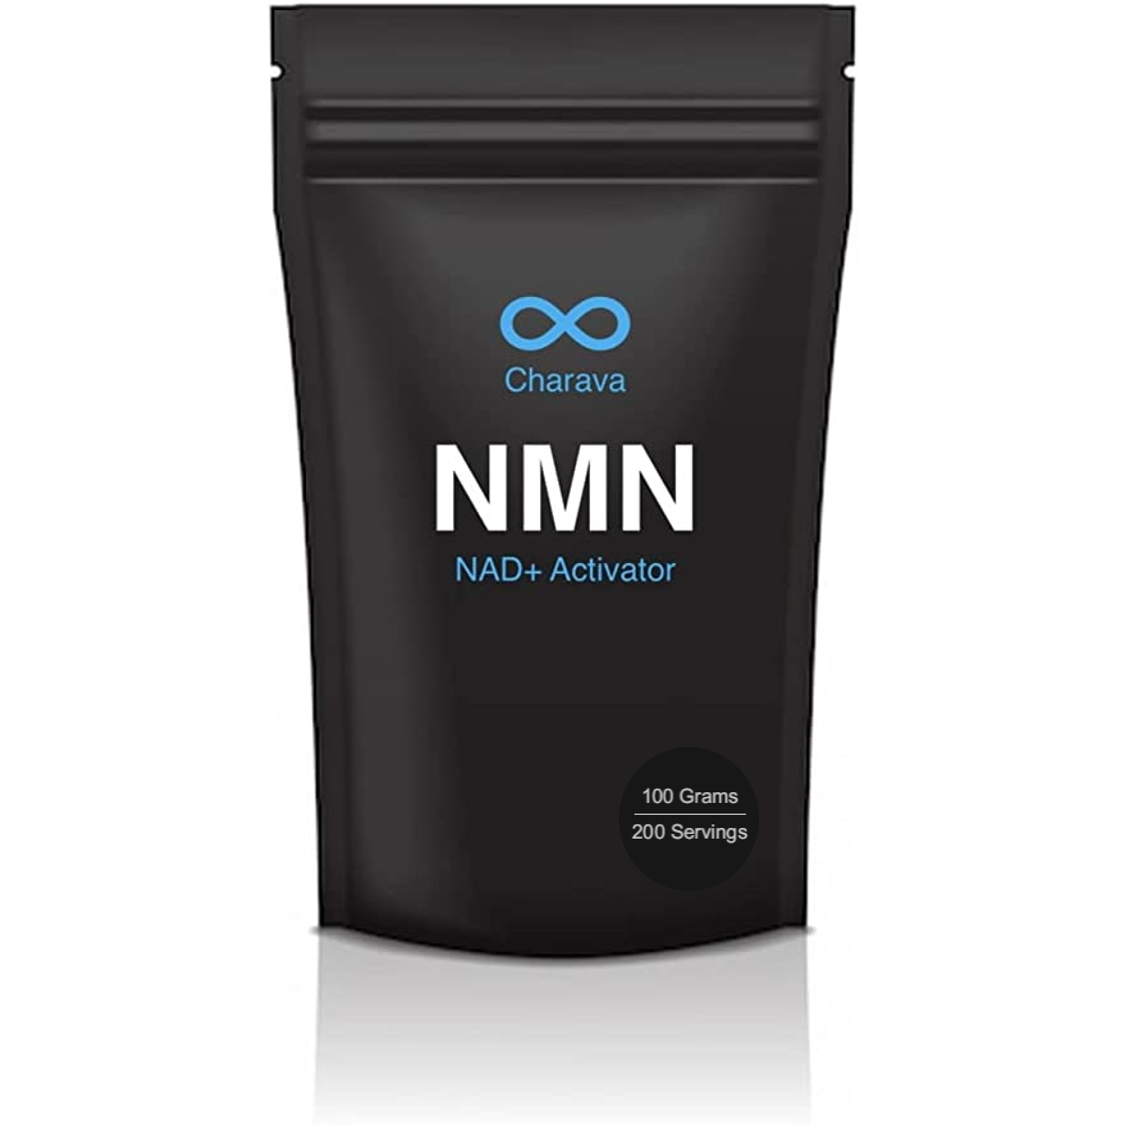 NMN Powder